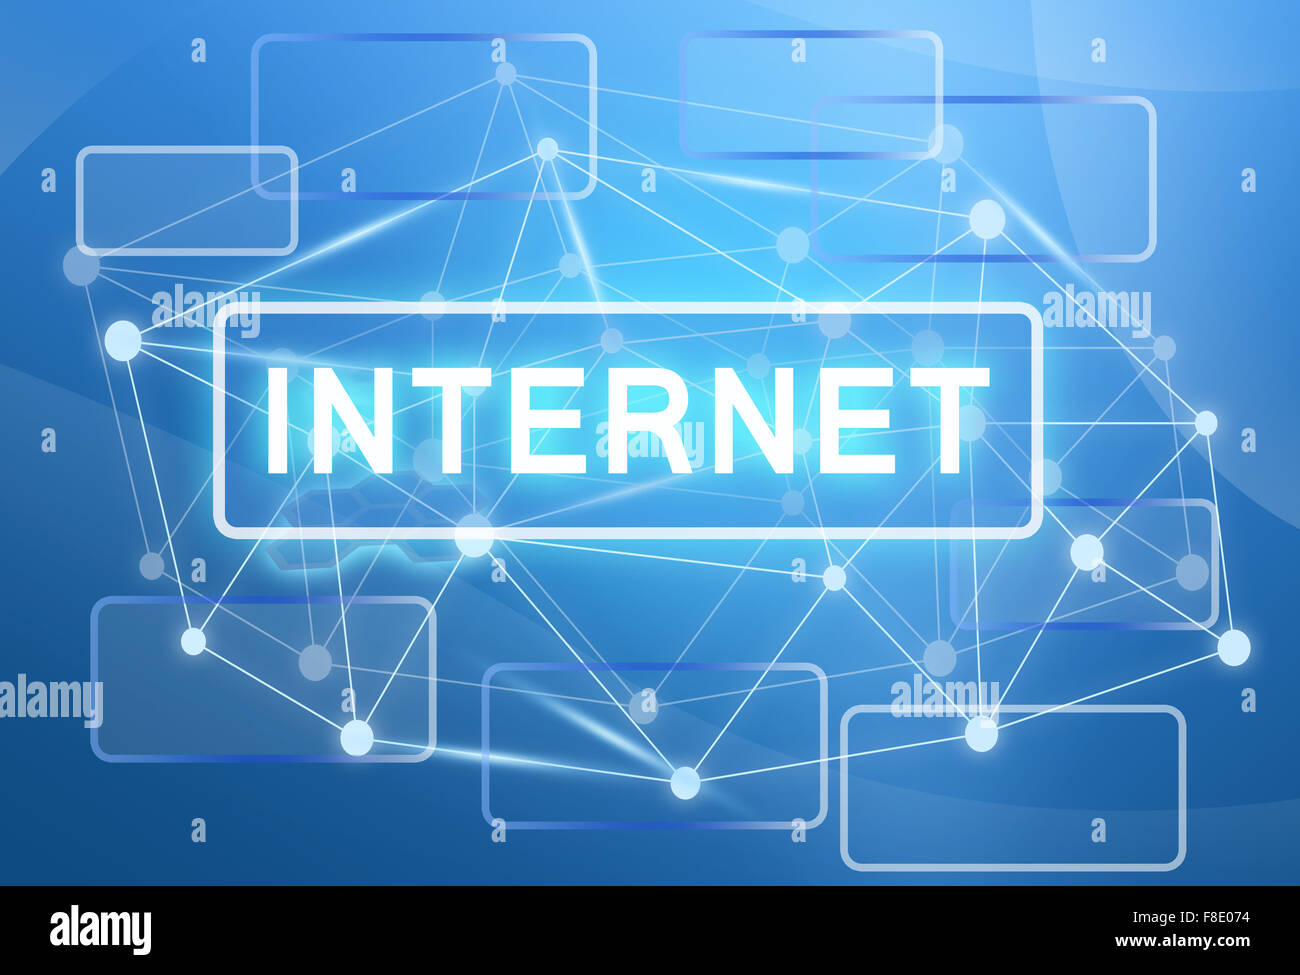 Netzwerk-Technik-Kommunikation. Rechtecke auf blauem Hintergrund Stockfoto